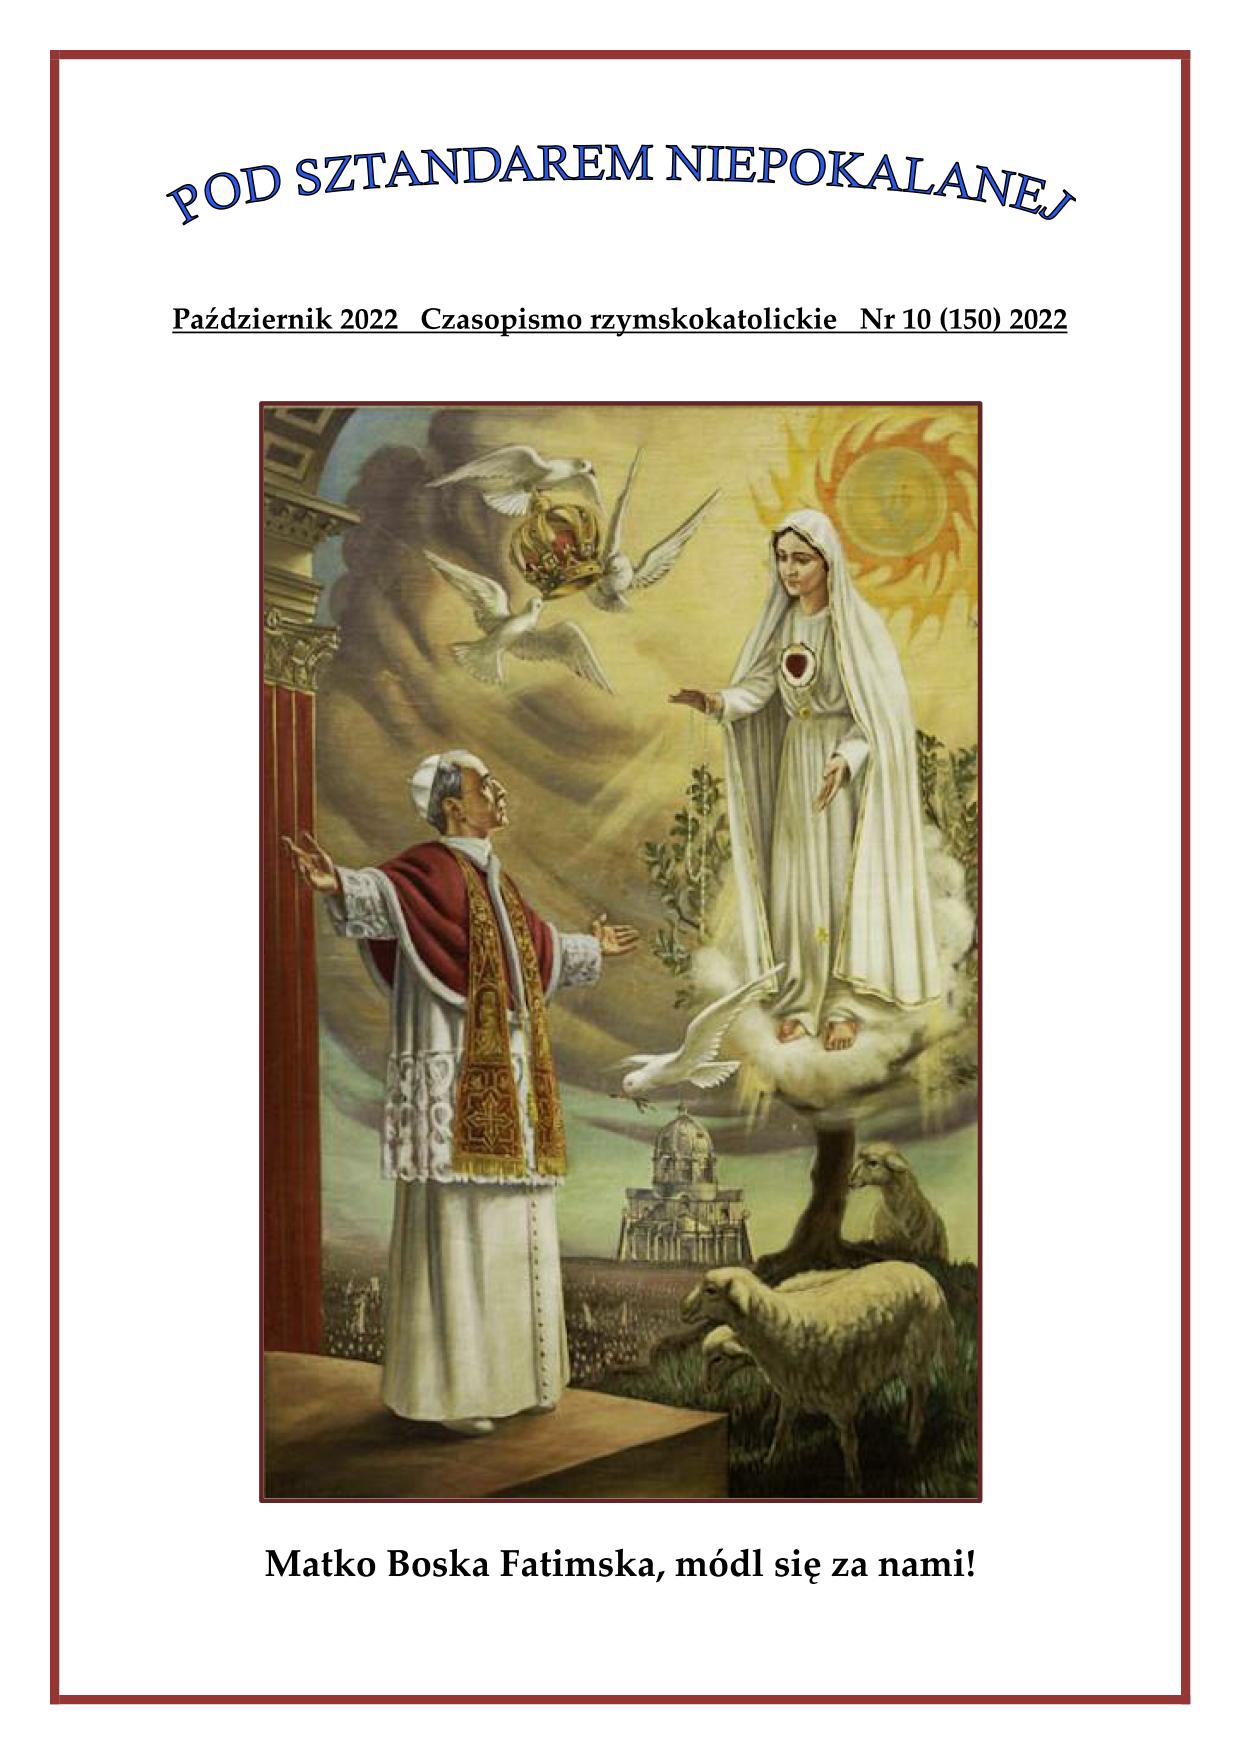 "Pod sztandarem Niepokalanej". Nr 150. Październik 2022. Czasopismo rzymskokatolickie.